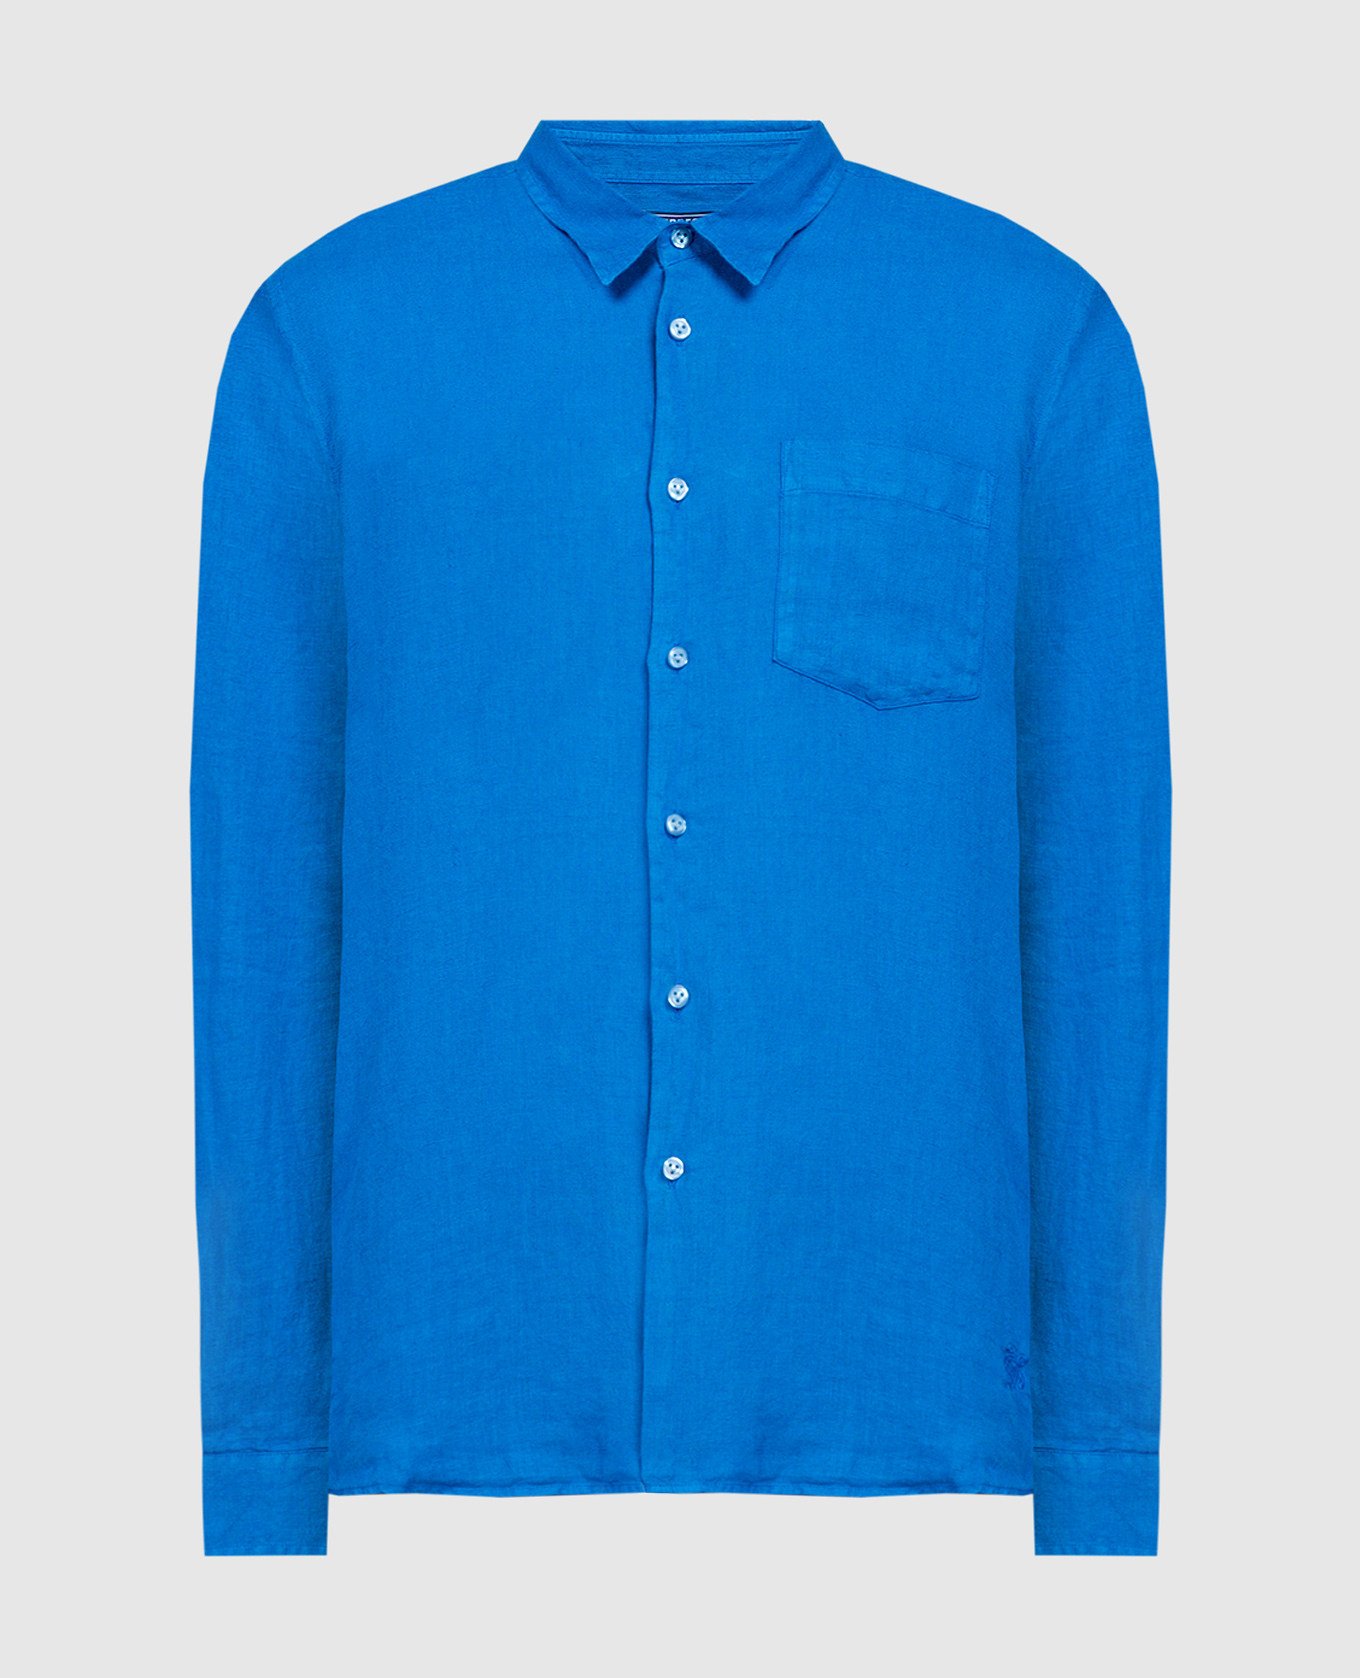 Blue linen shirt with logo